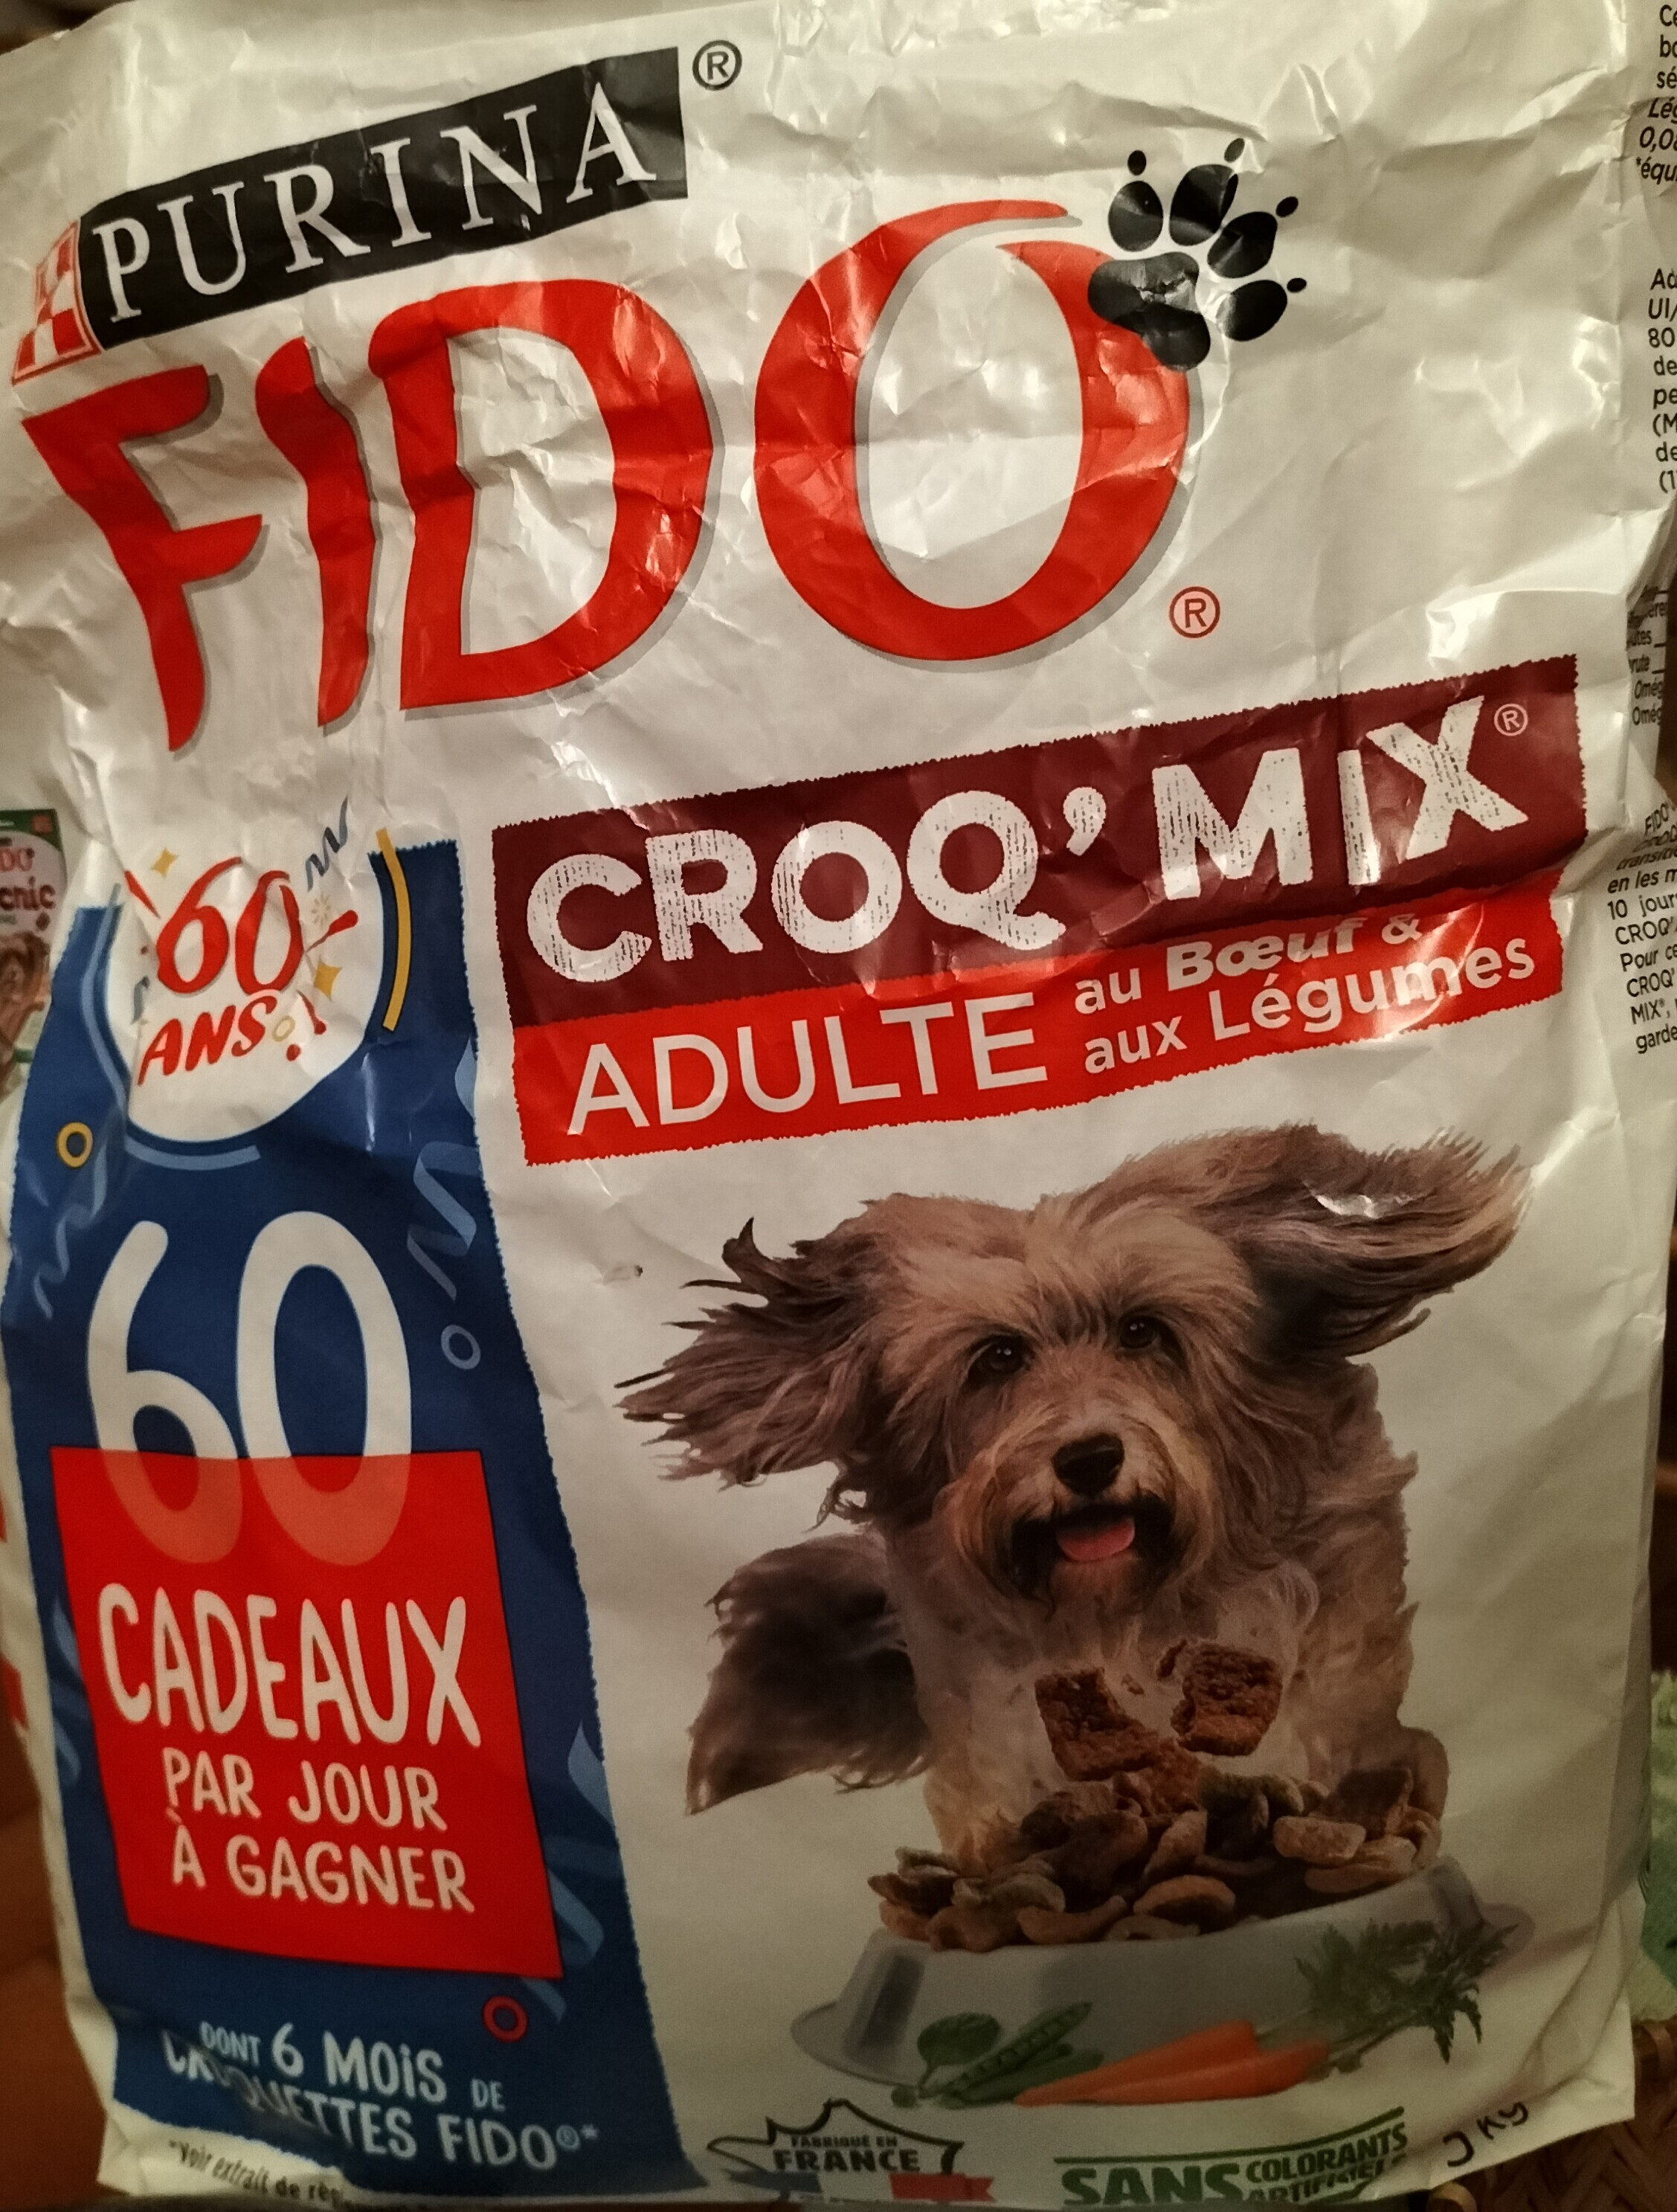 Crocq' mix adulte au boeuf et aux légumes - Product - fr